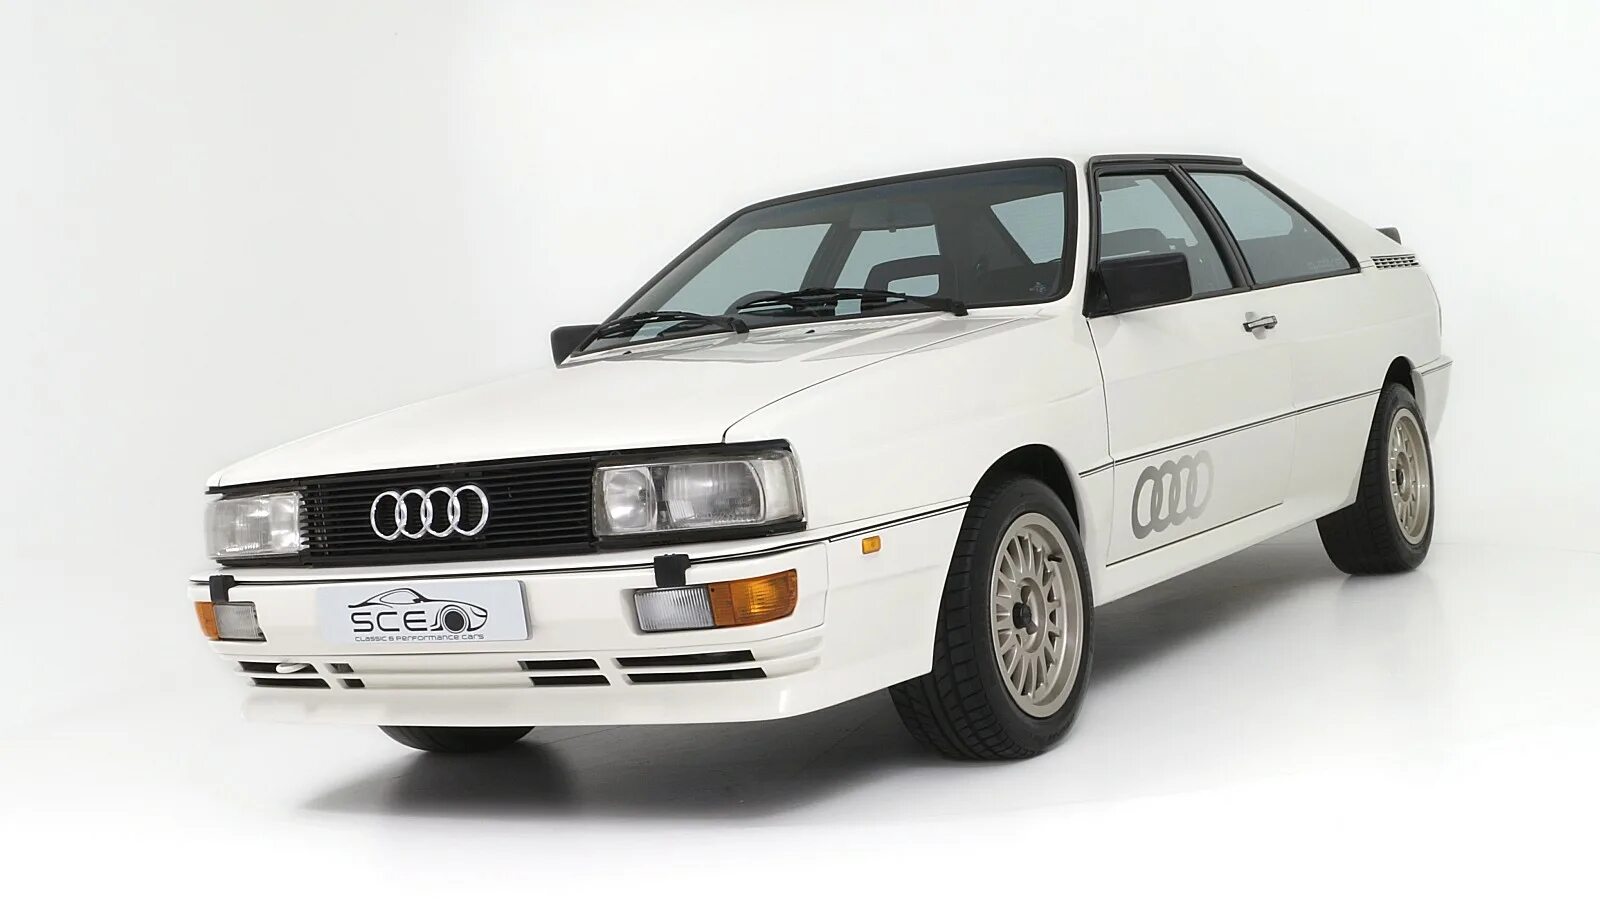 Audi White quattro. Audi 100 Coupe quattro. "Audi" "quattro" "1983" GM. Audi quattro 80 хэтчбек. Куплю ауди квадро